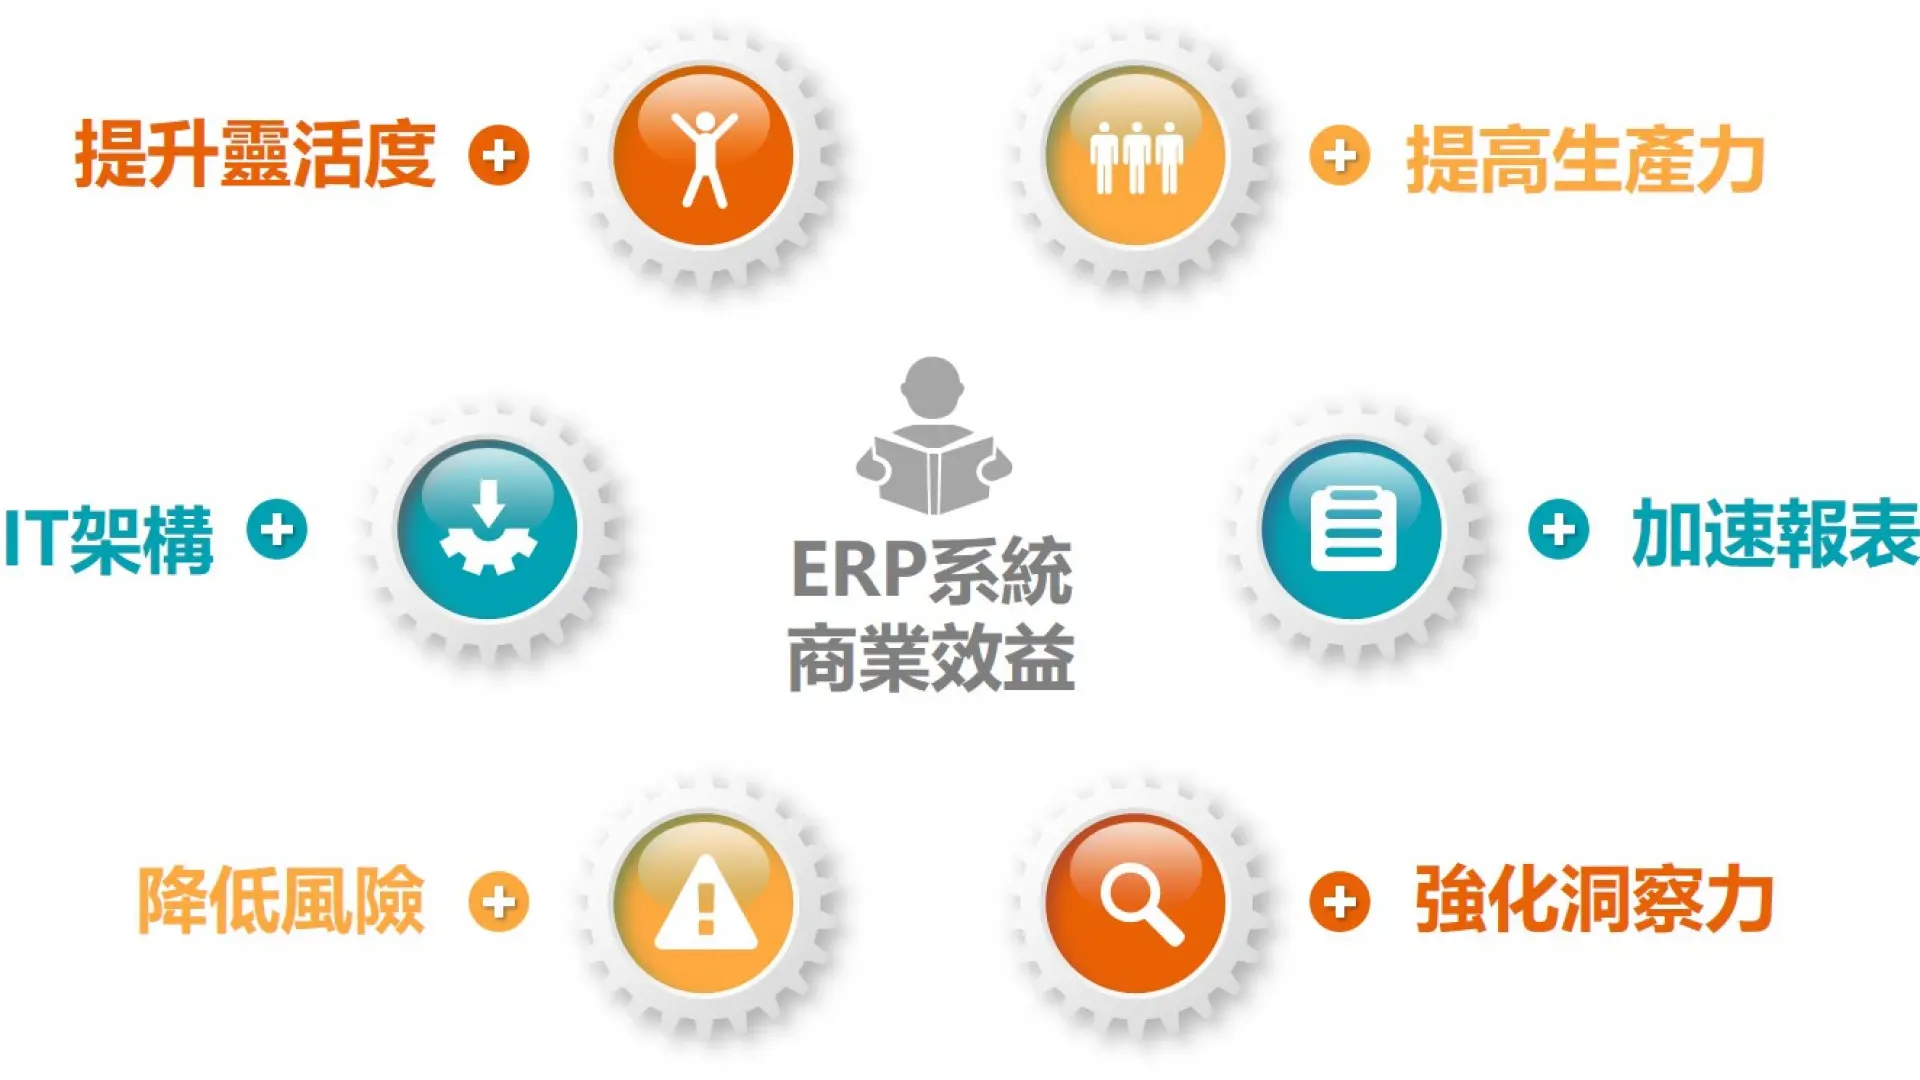 ERP（Enterprise Resource Planning）